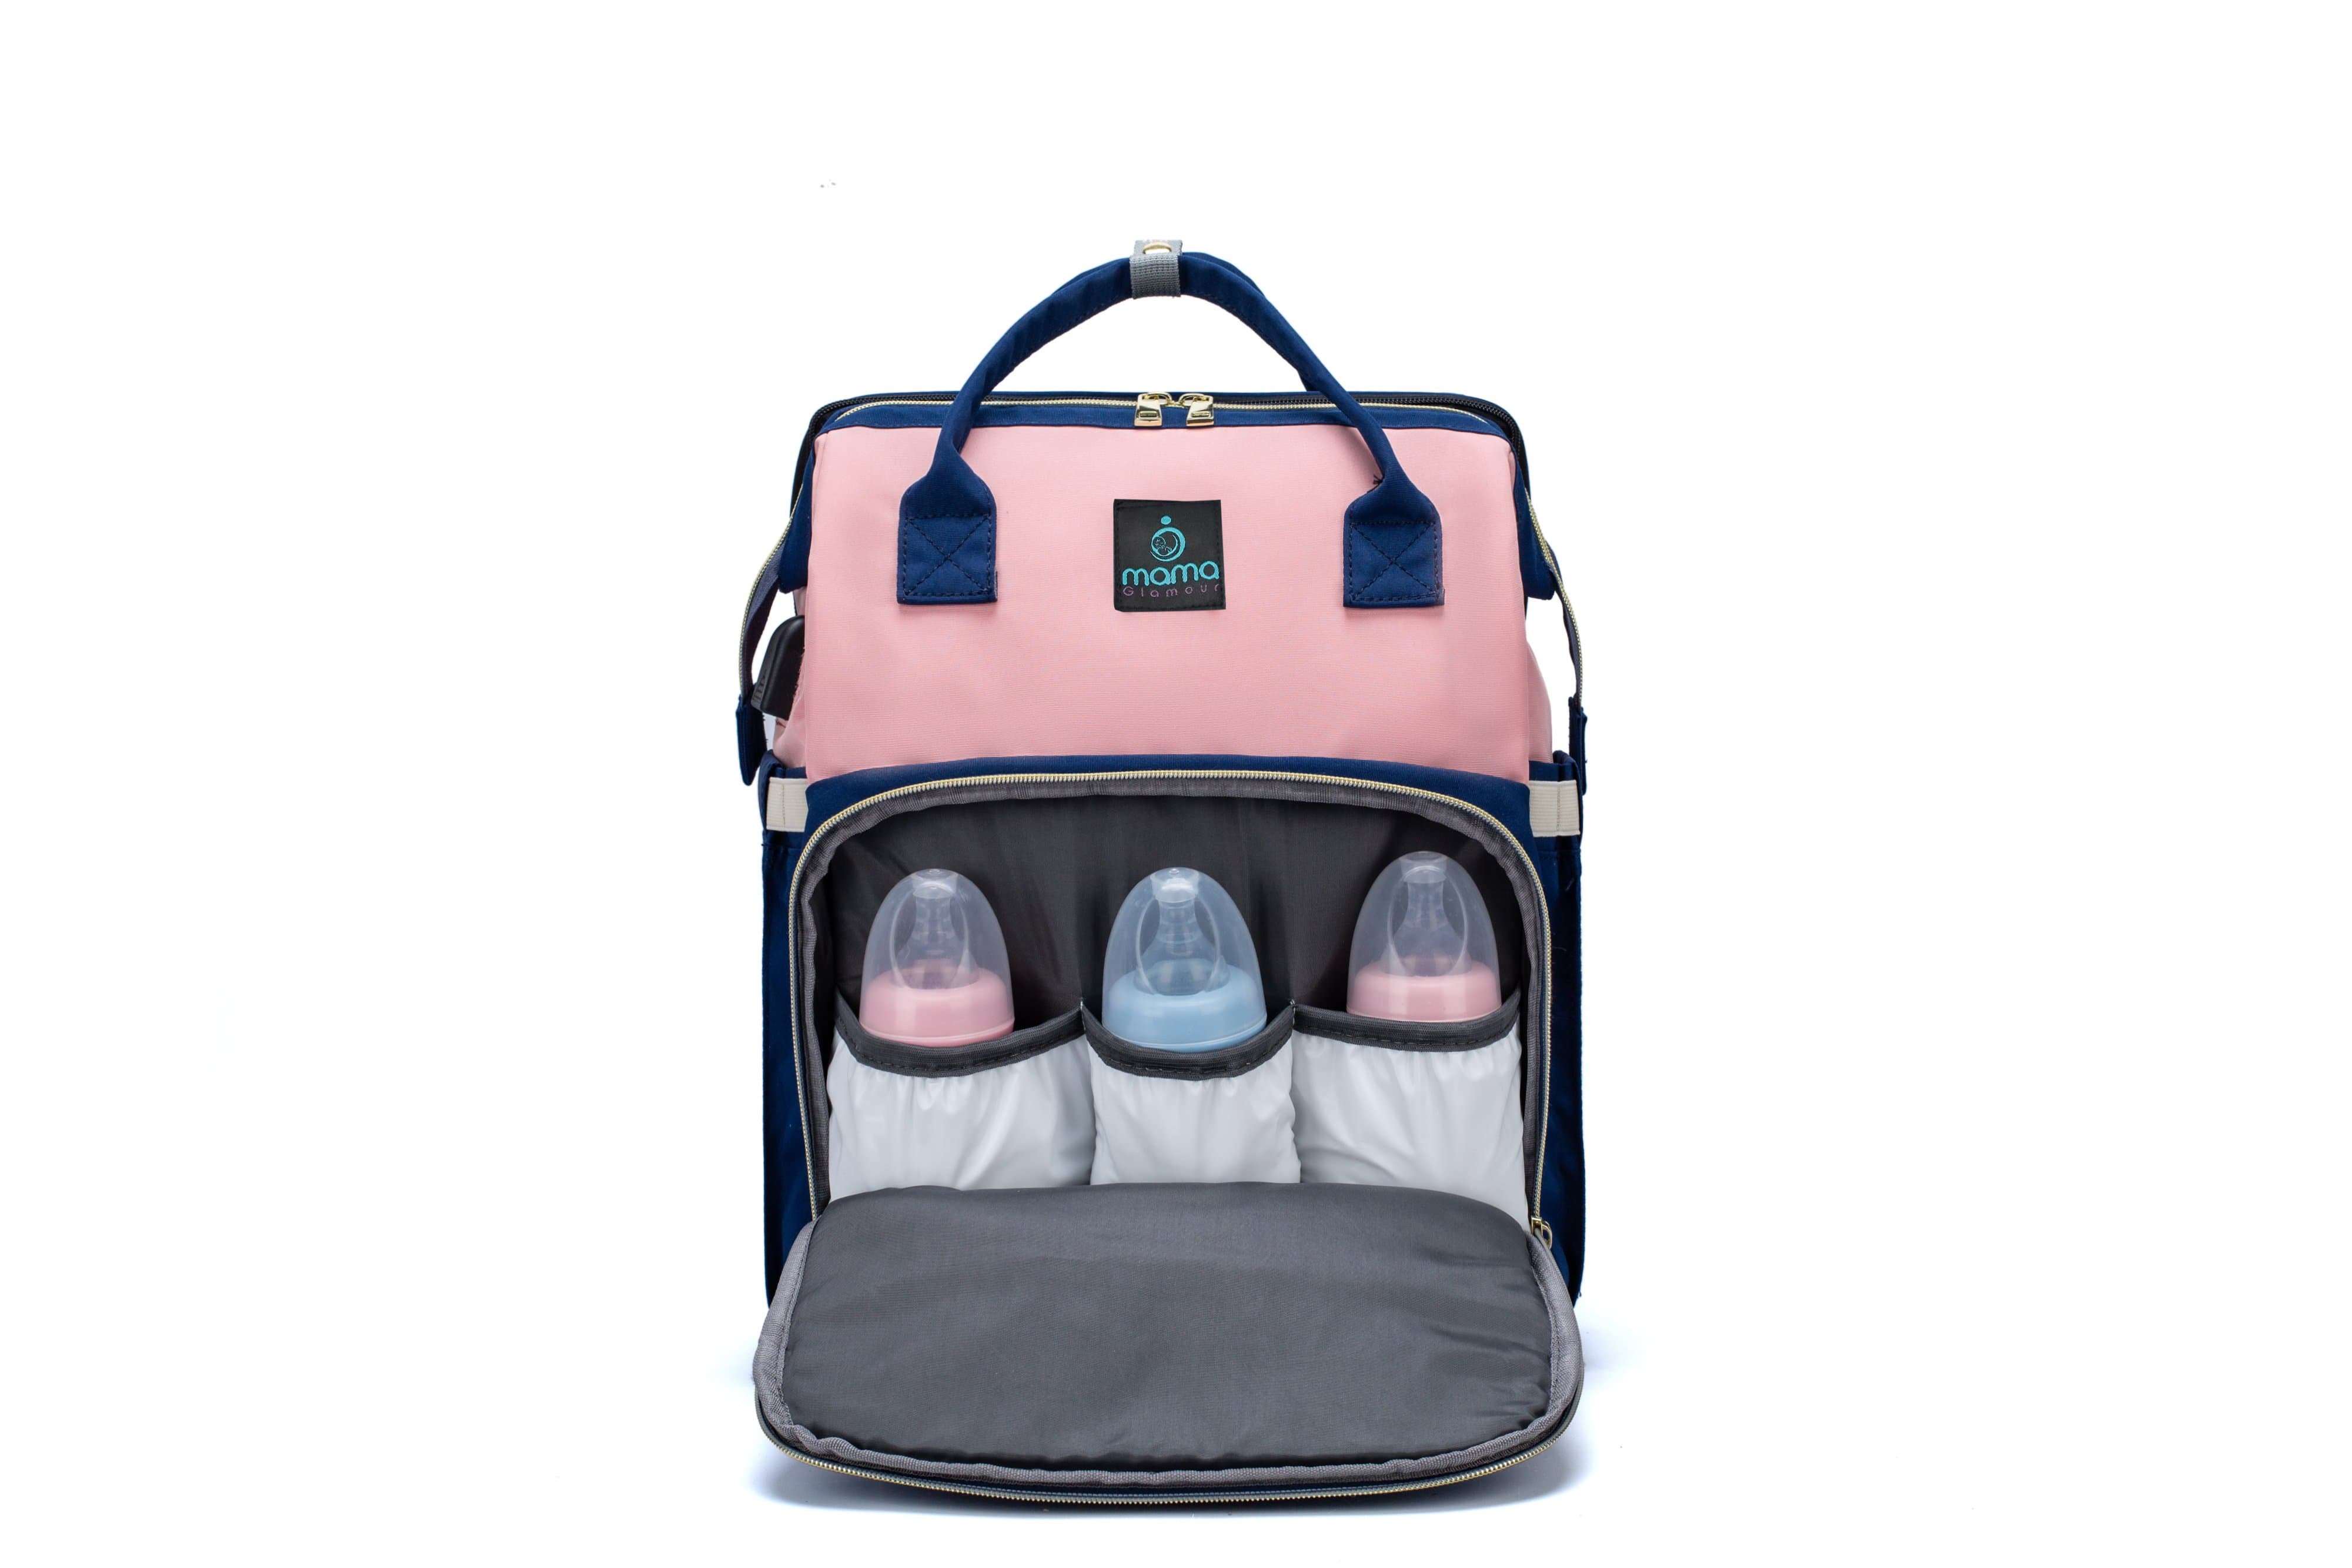 7 in 1 Premium Diaper Bag - Pink & Blue